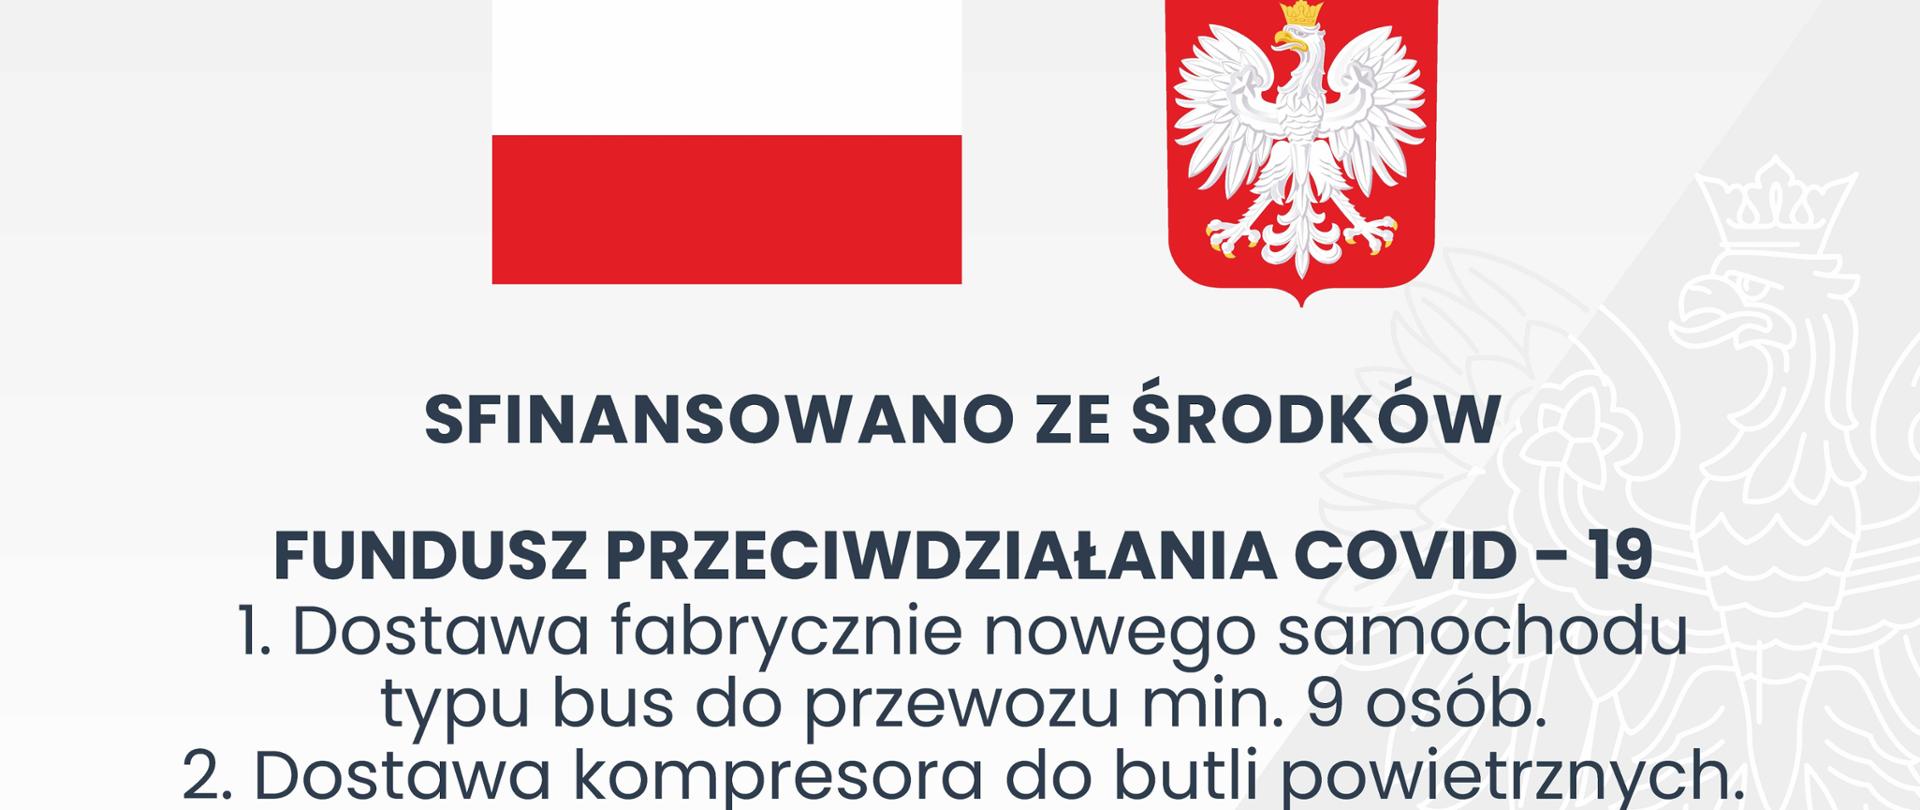 Tablica informacyjna z flagą polski oraz godłem. Na tablicy umieszczone dane dot. finansowania zakupów oraz kwota całkowita za zakup.